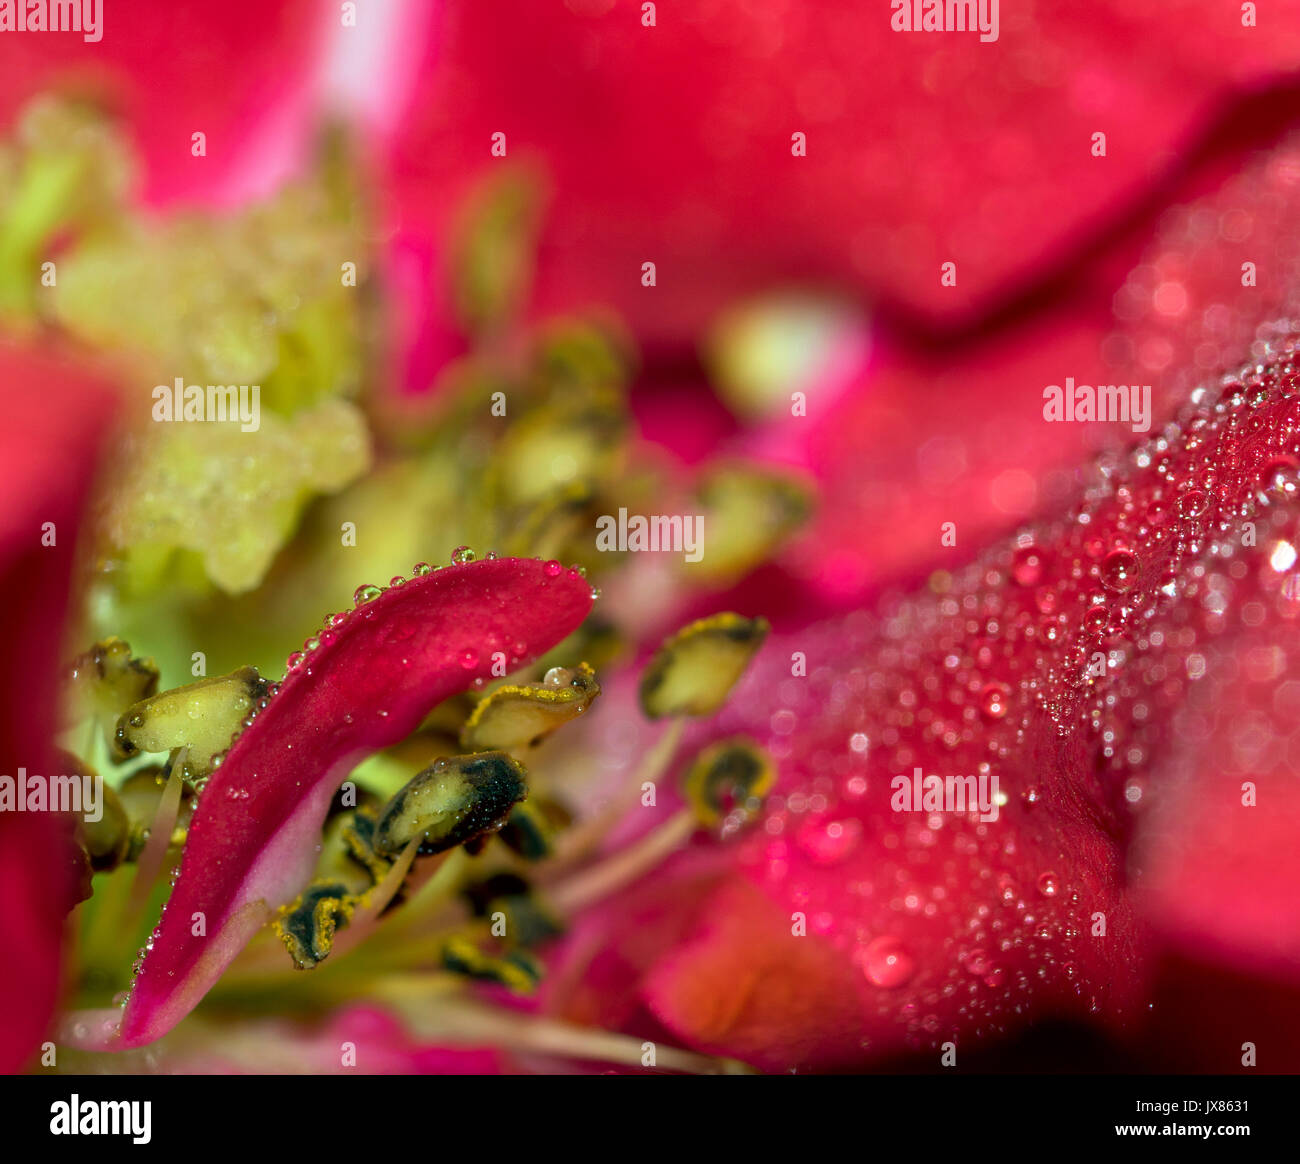 Pequeñas gotas de agua de lluvia en un pétalo de flor rosa roja, mostrando el centro de la flor en el fondo Foto de stock